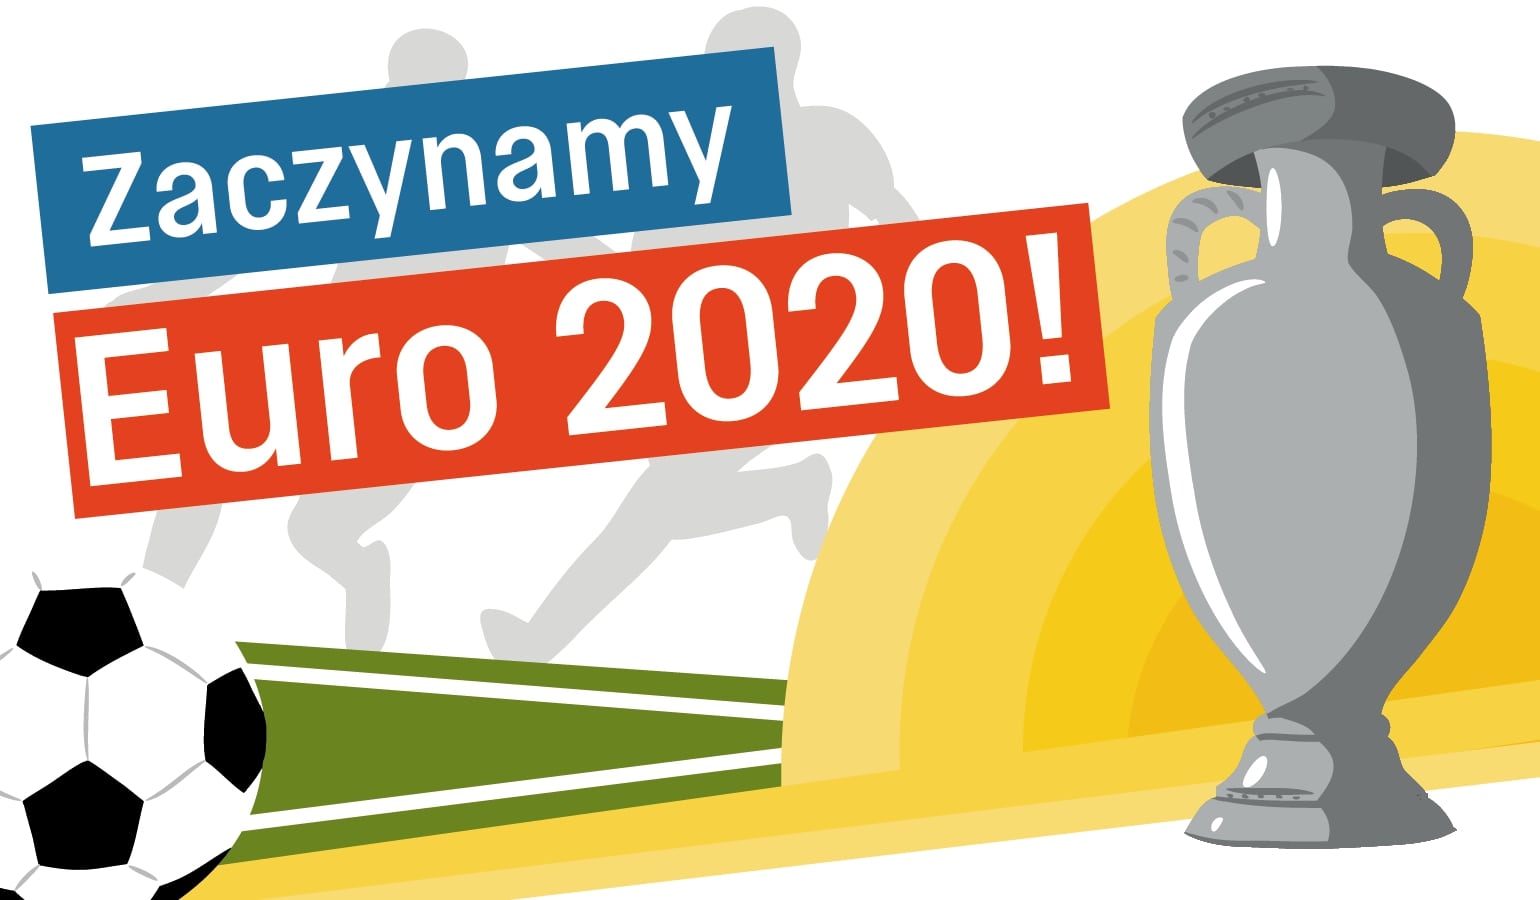 Piątek, 11.06.2021 - NEWS: Zaczynamy Euro 2020!